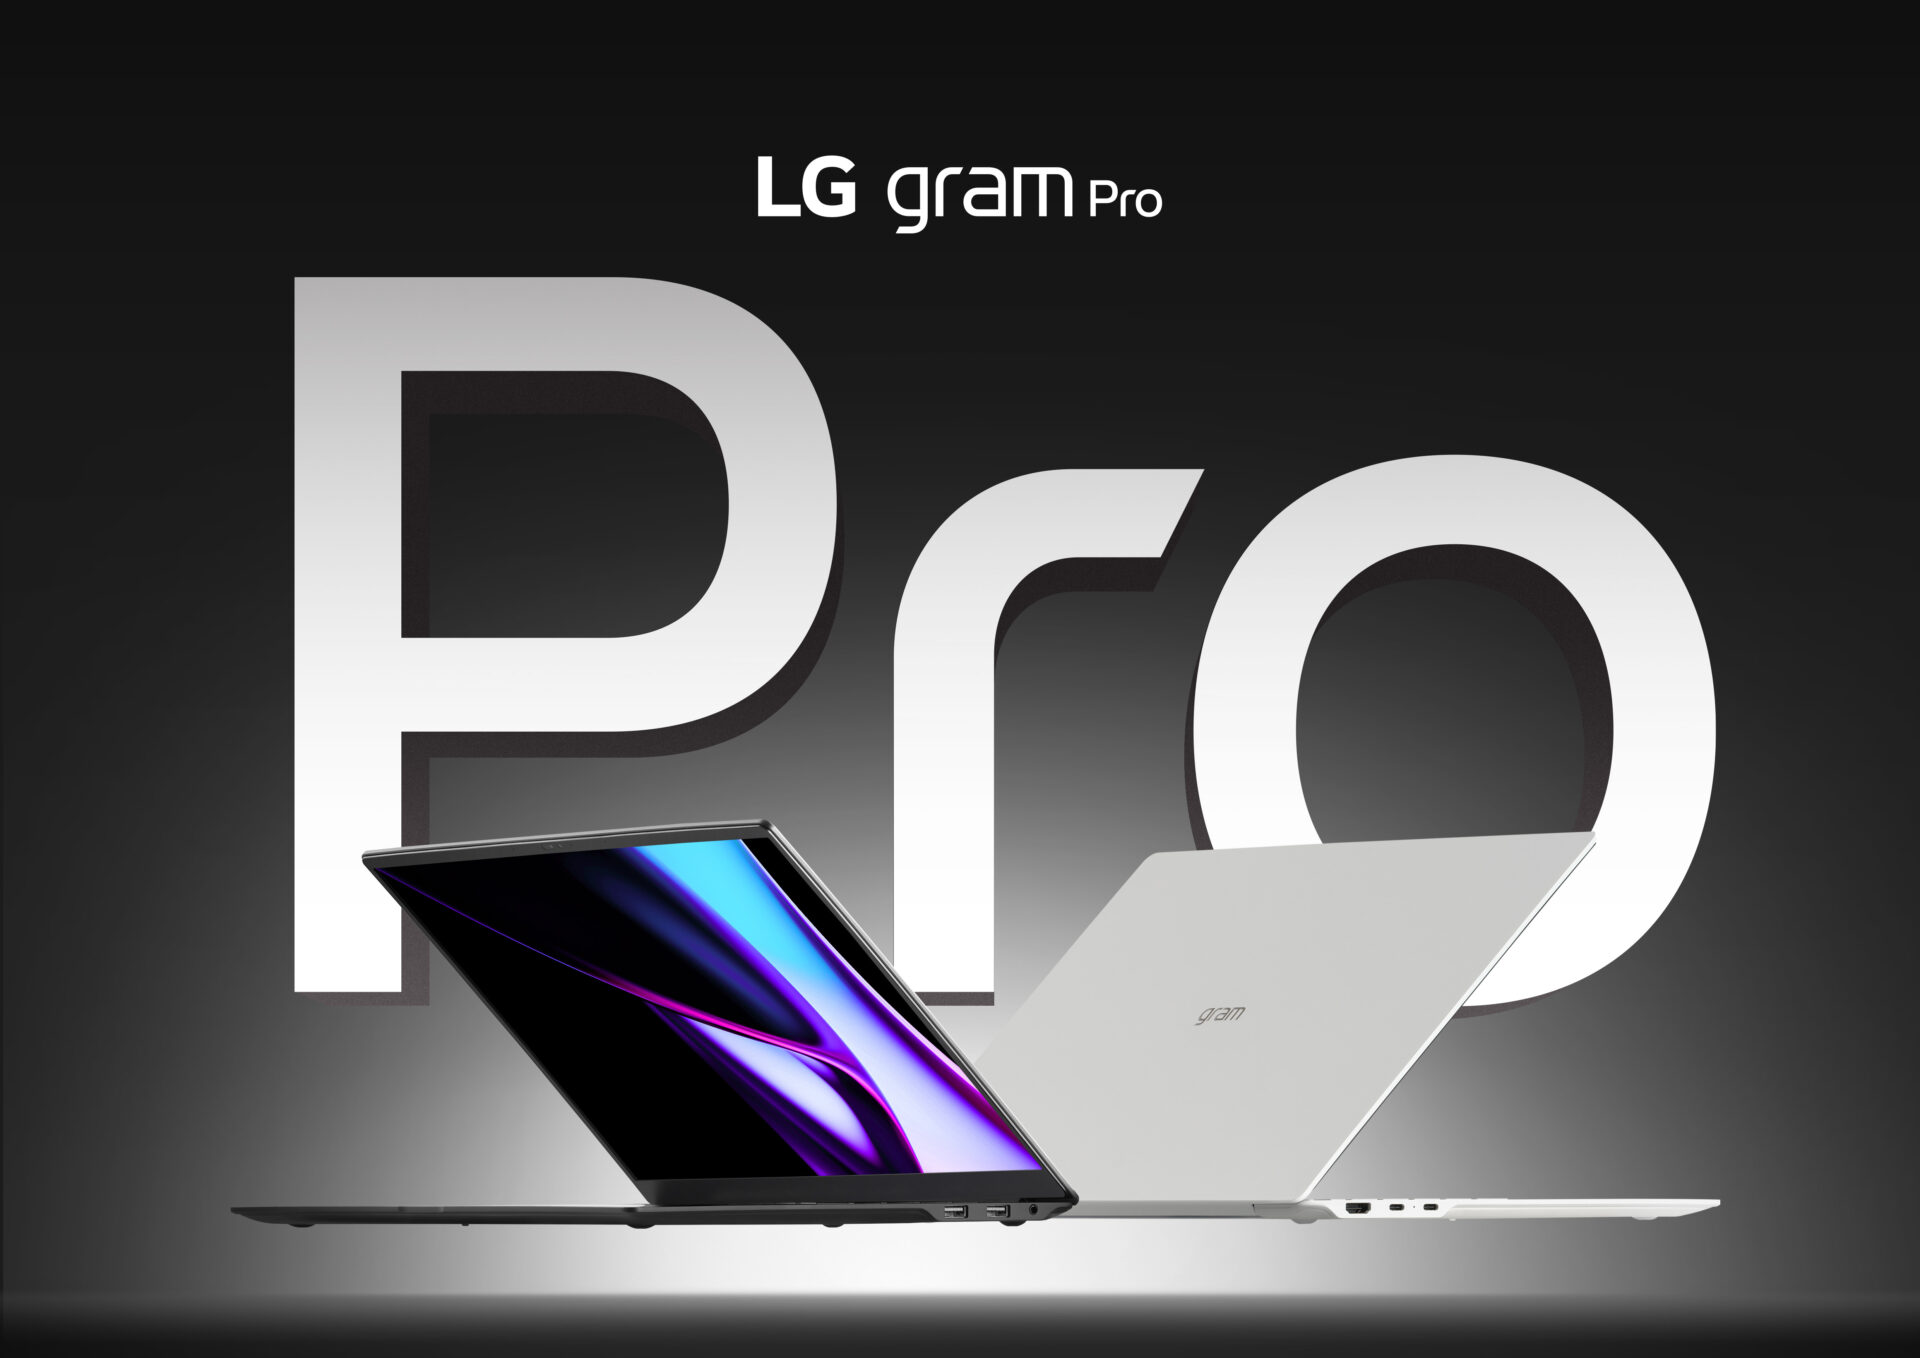 LG전자가 새롭게 출시하는 최상위 라인업 LG 그램 프로의 제품 이미지